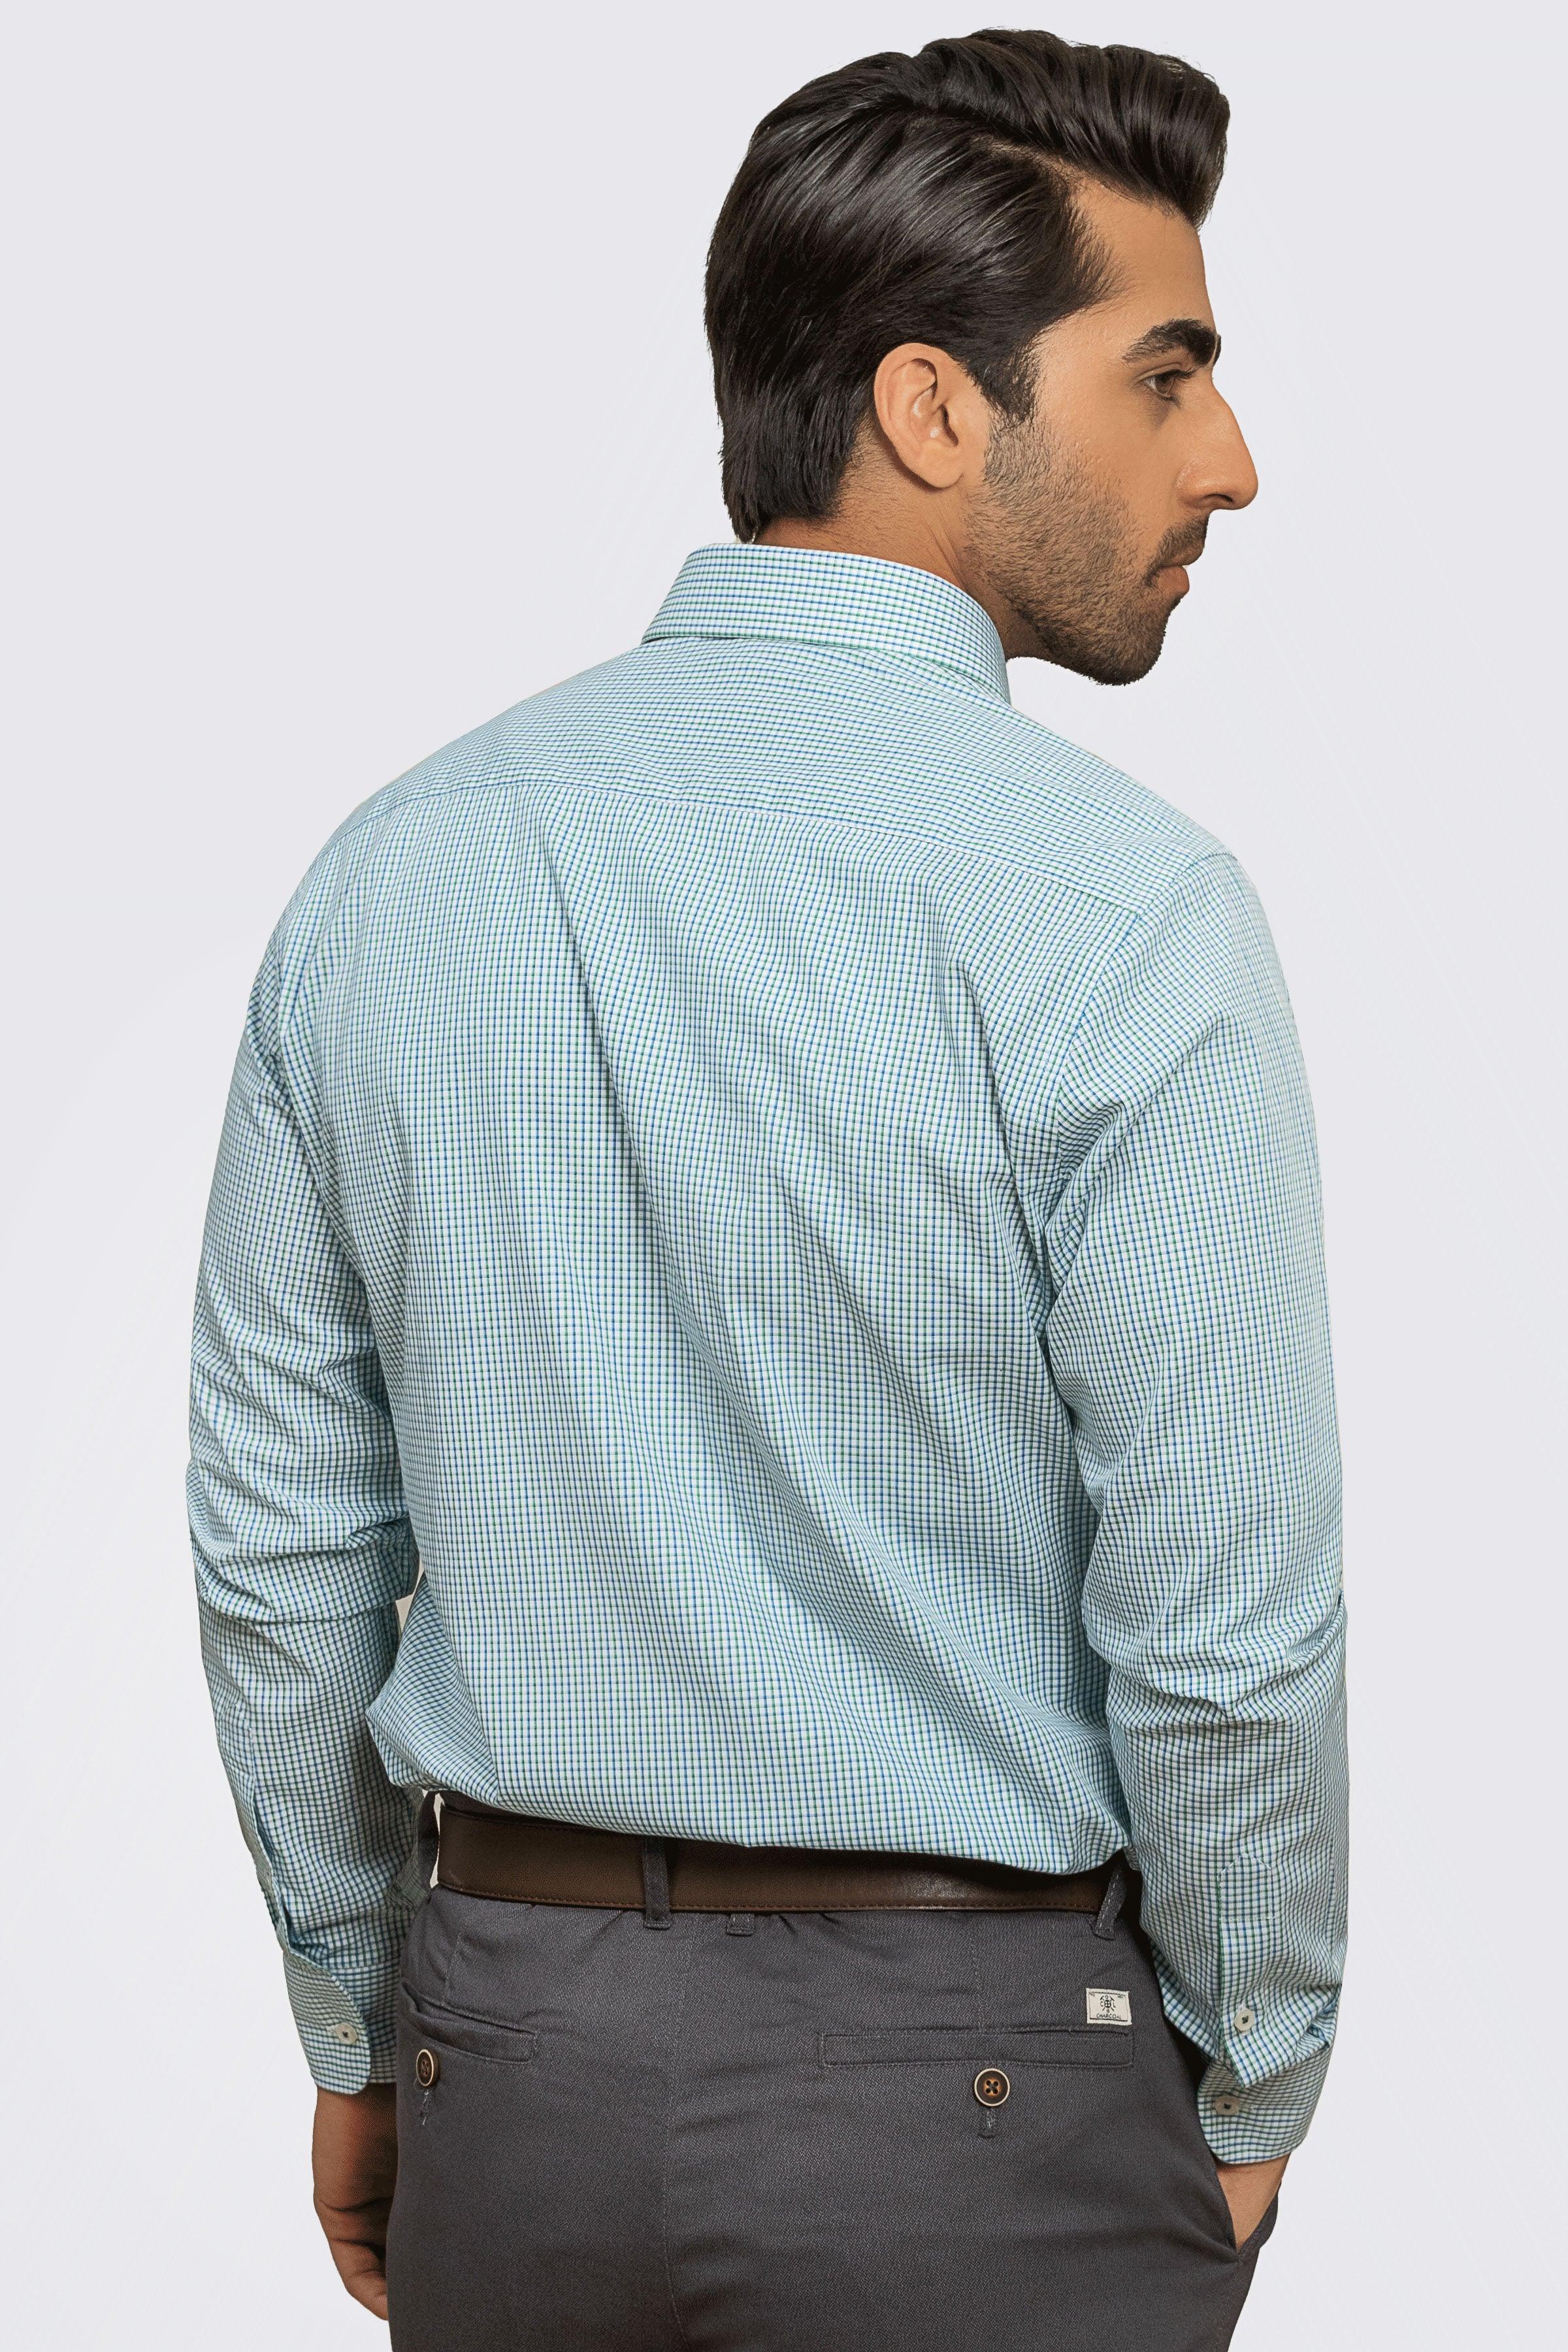 SEMI FORMAL SHIRT BLUE GREEN CHECK at Charcoal Clothing